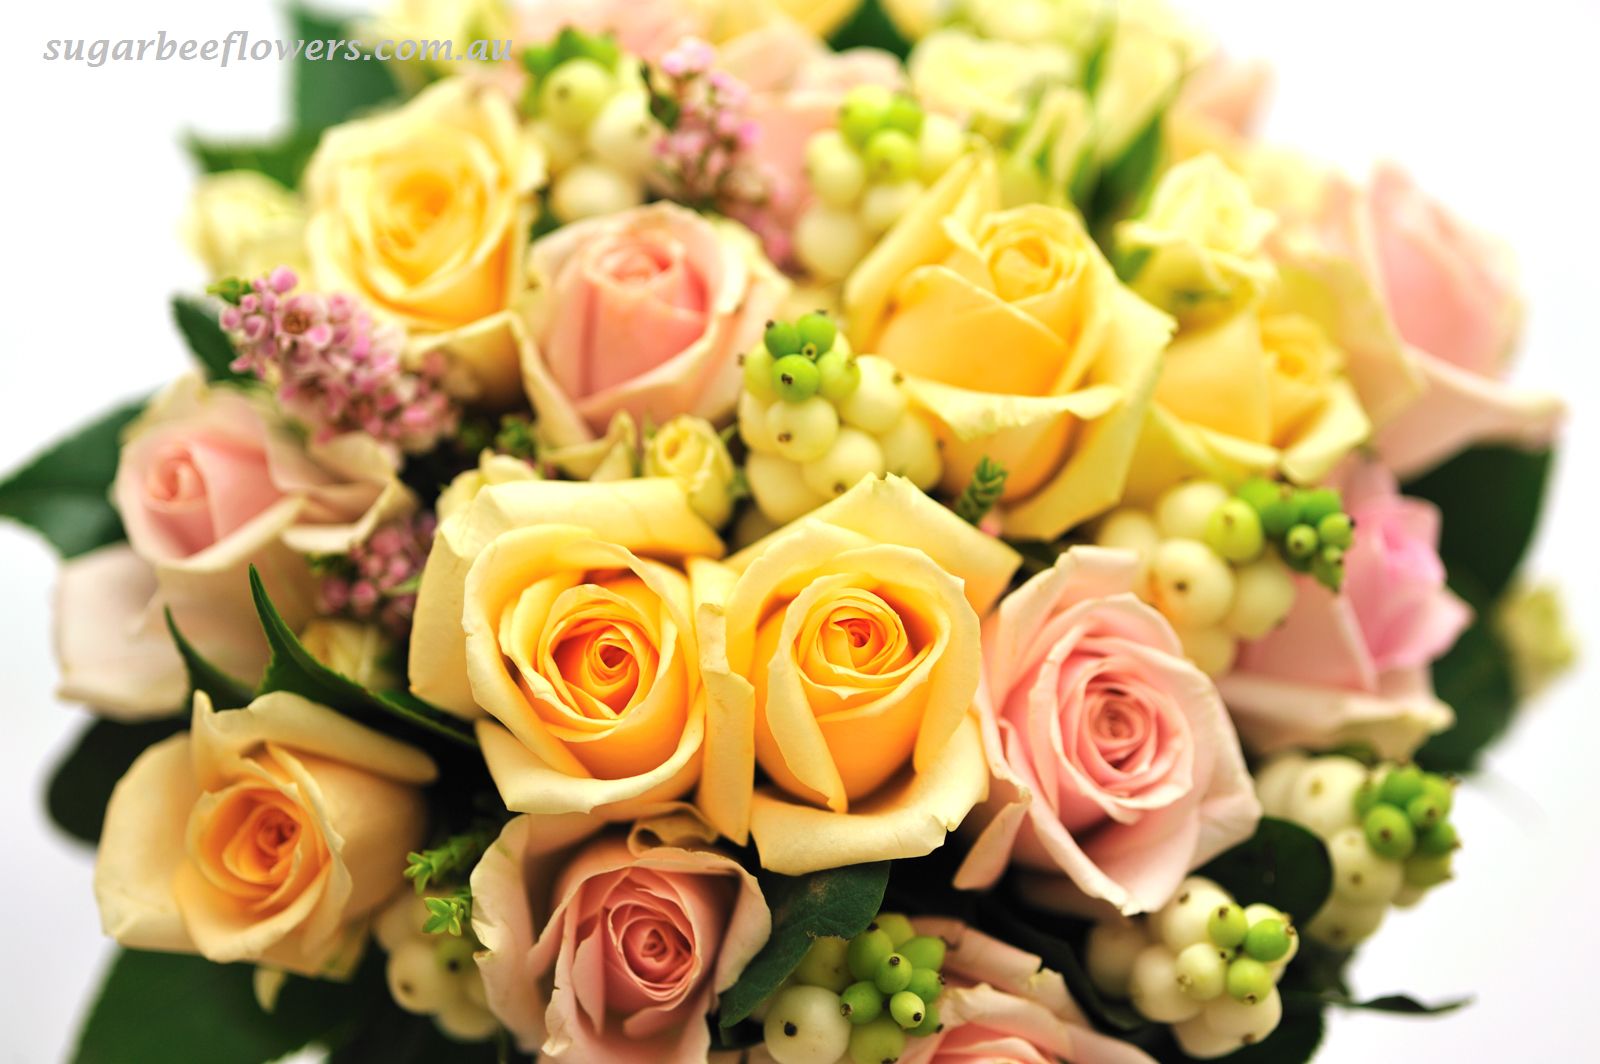 Sugar Bee Flowers: Mixed garden bouquet & rose bouquet